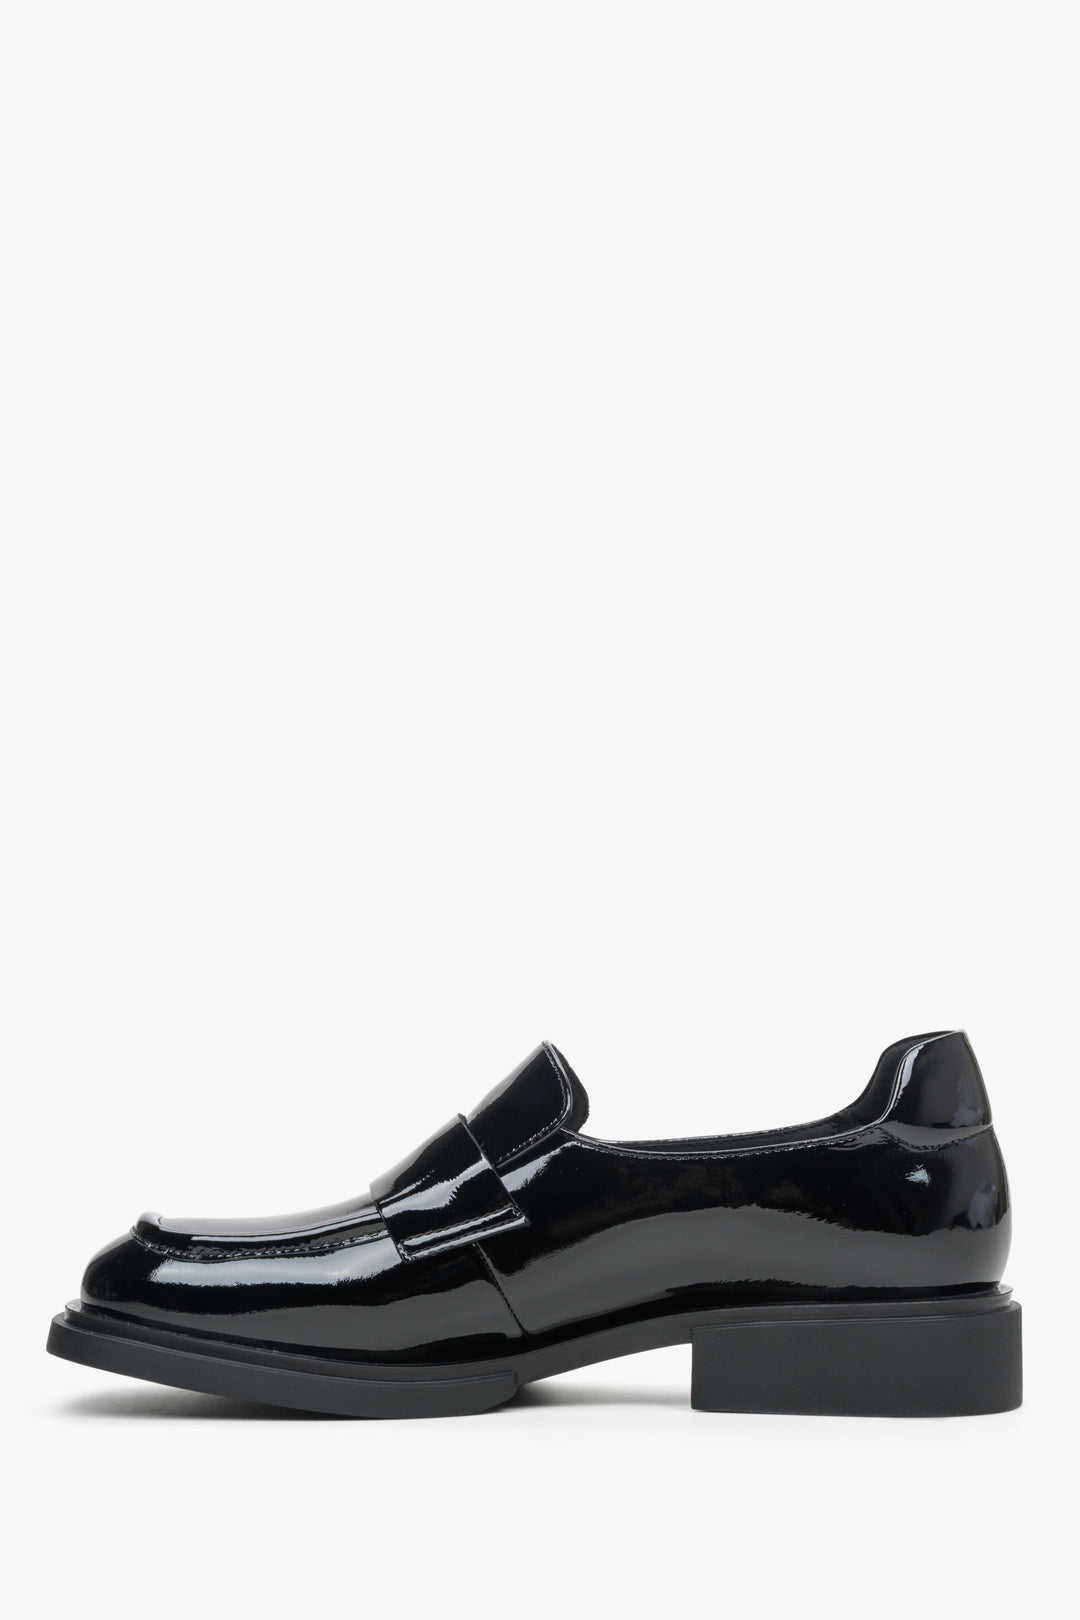 Czarne, damskie mokasyny z kwadratowym czubkiem marki Estro z lakierowanej skóry naturalnej - profil buta.